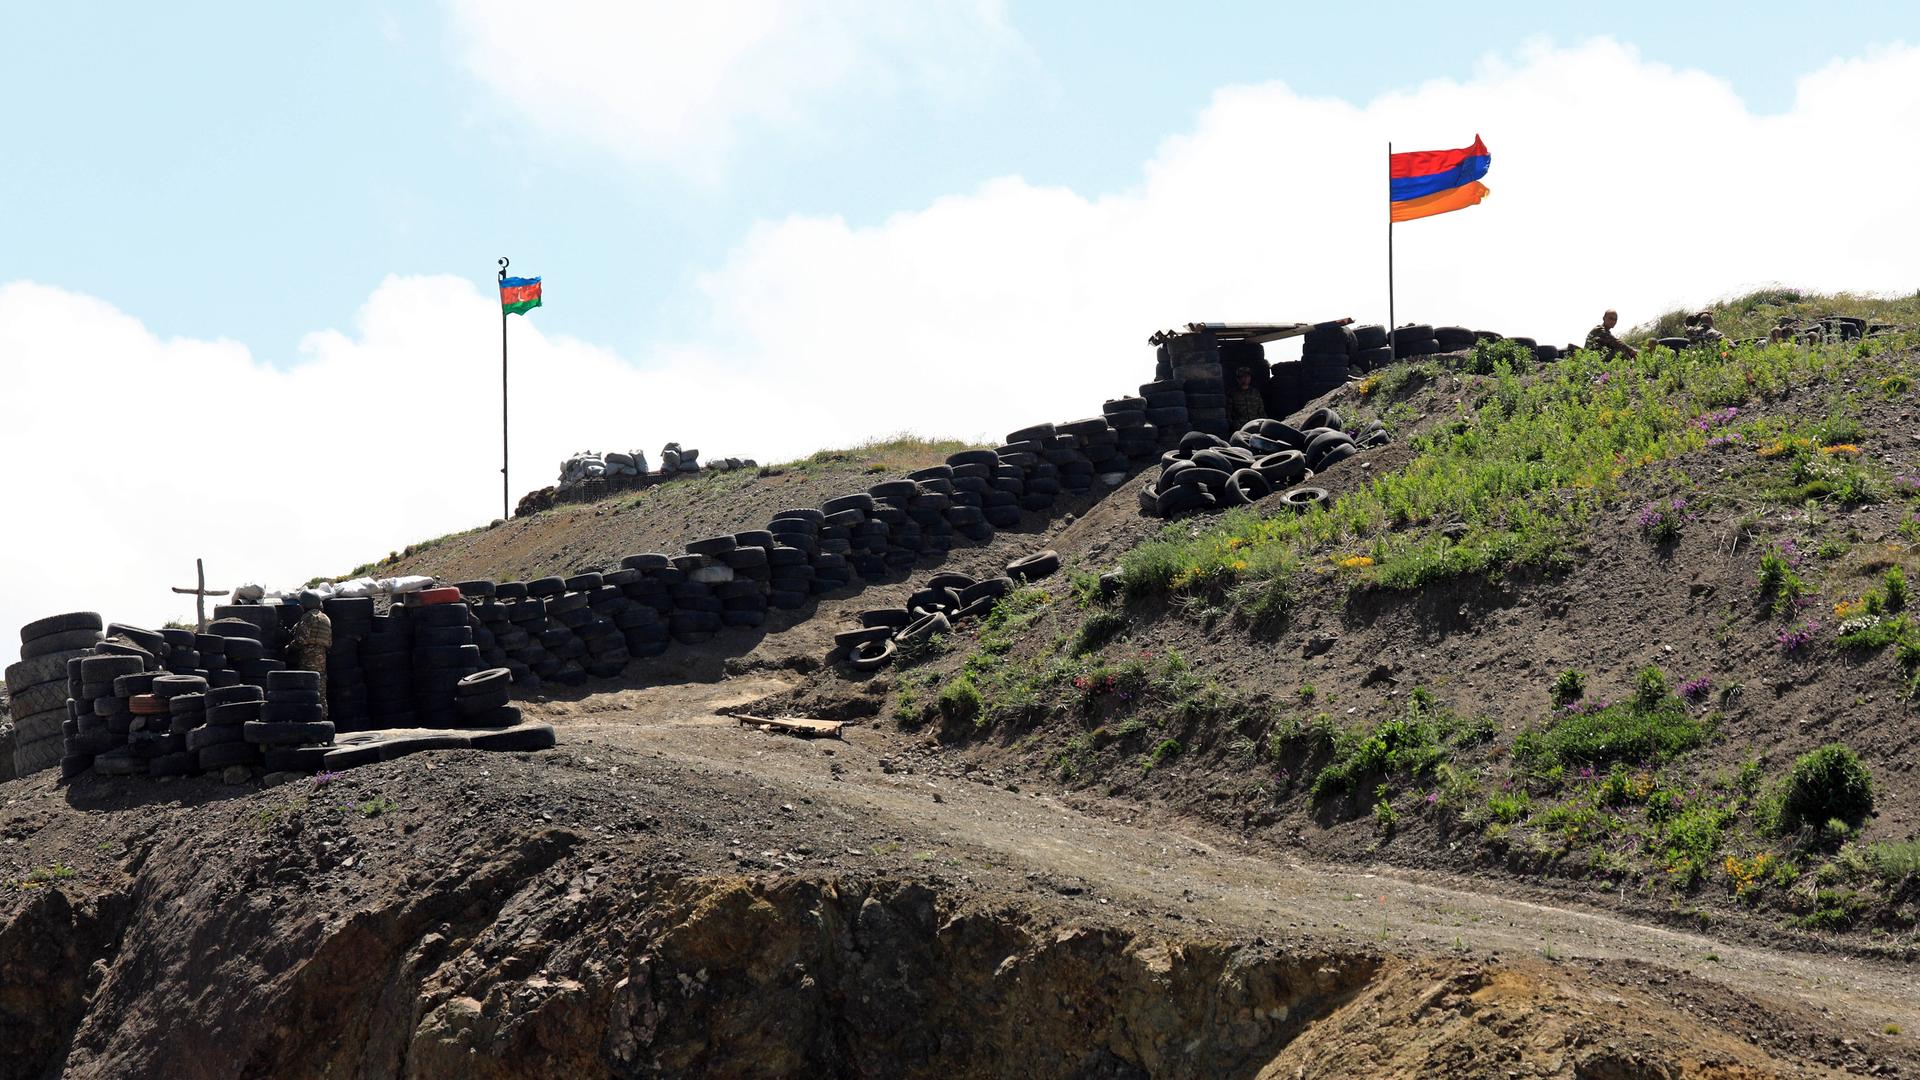 Ein armenischer Militärposten, über den Befestigungen weht die armenische Fahne, Reifenstapel sind zum Schutz aufgestellt, im Hintergrund weht die aserbaidschanische Fahne an einem anderen Militärposten.